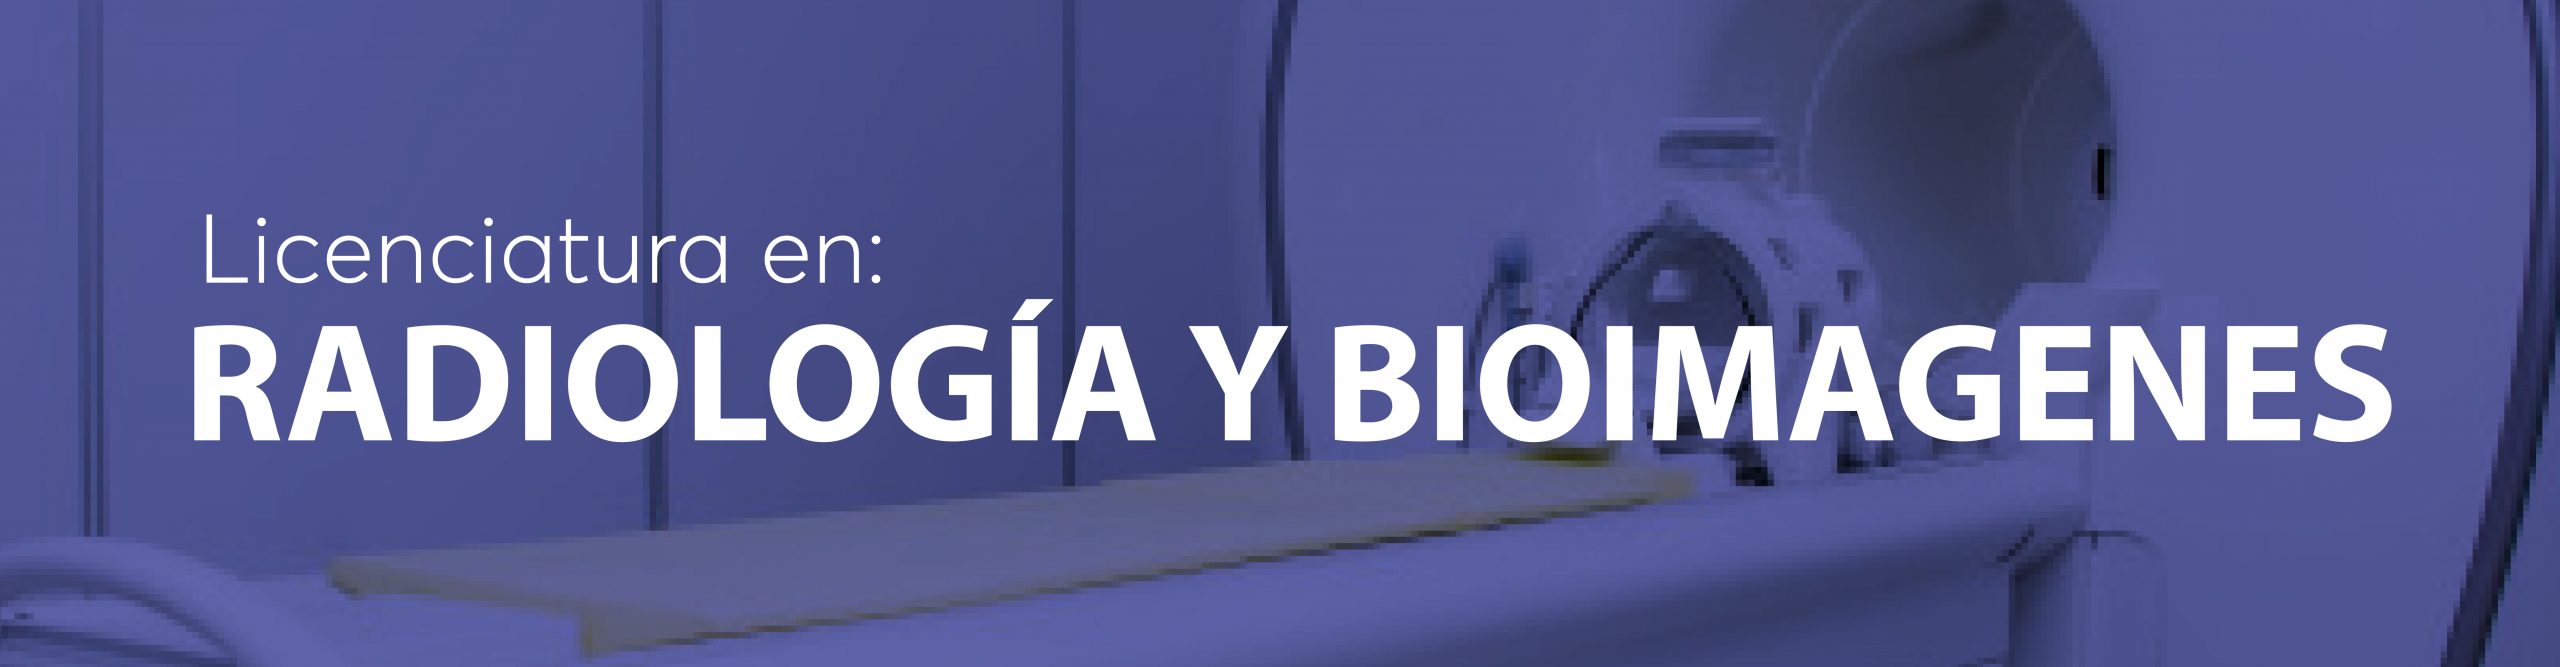 Radiologia y bioimagenes